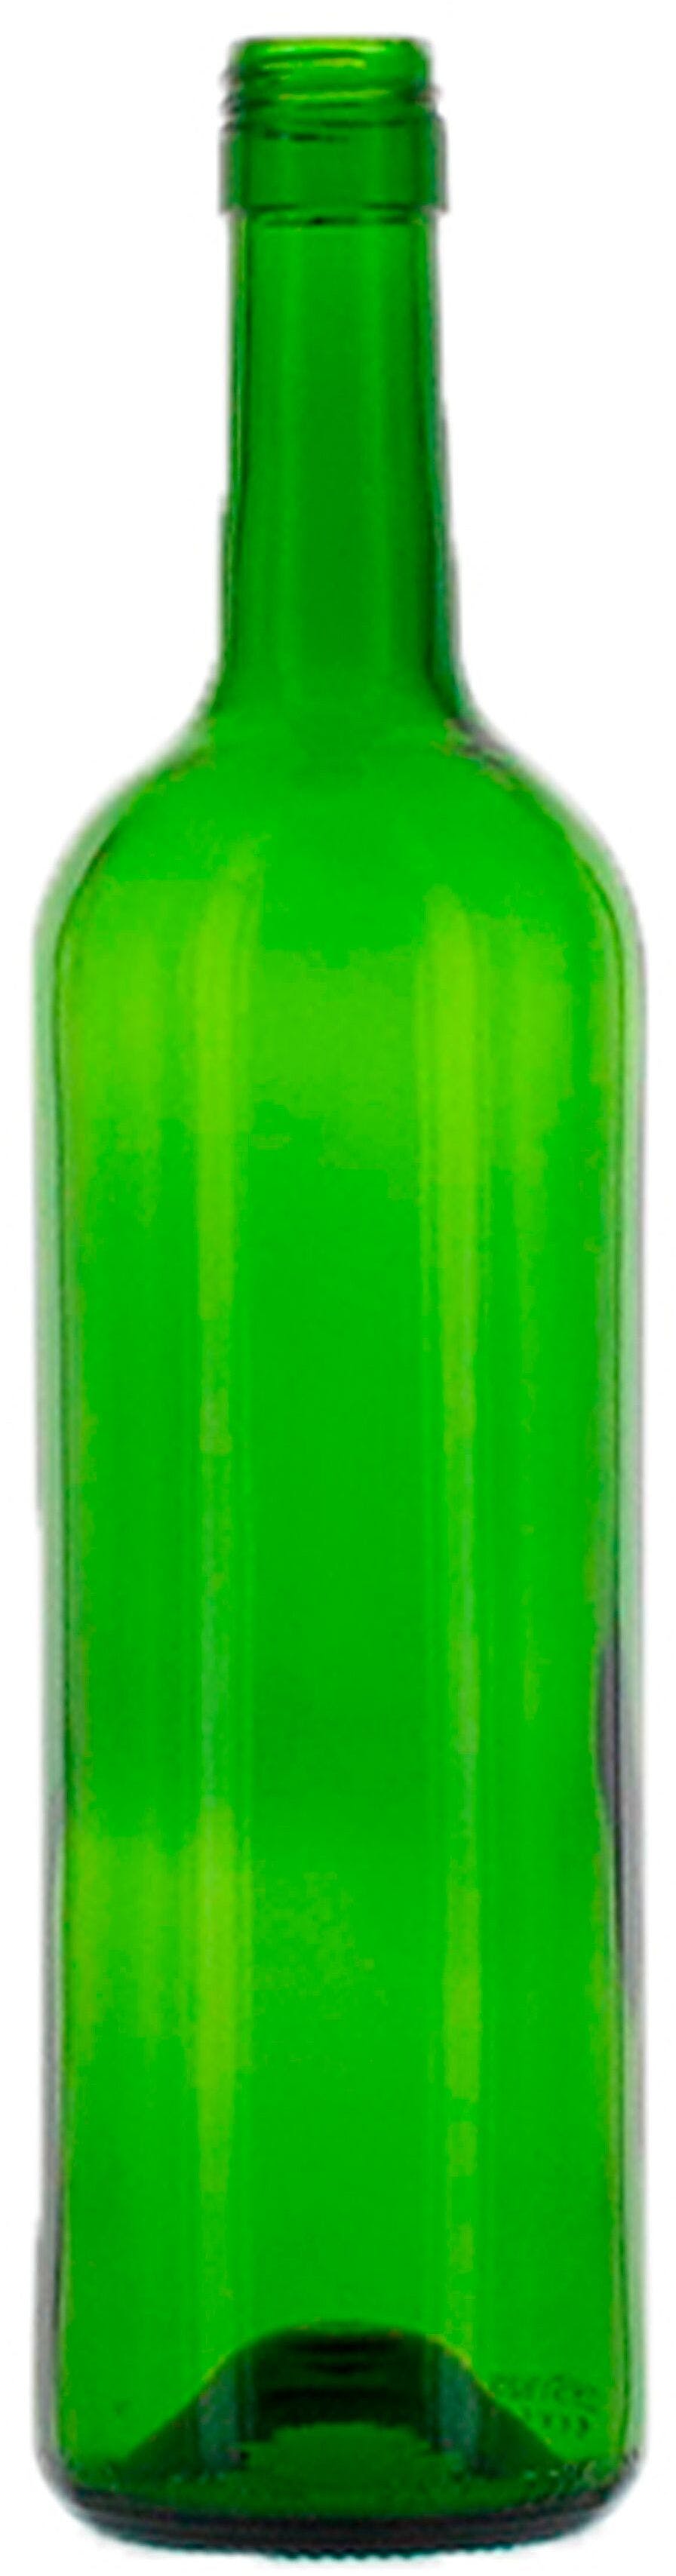 Bottiglia bordolese   MED 750 ml BG-Vite